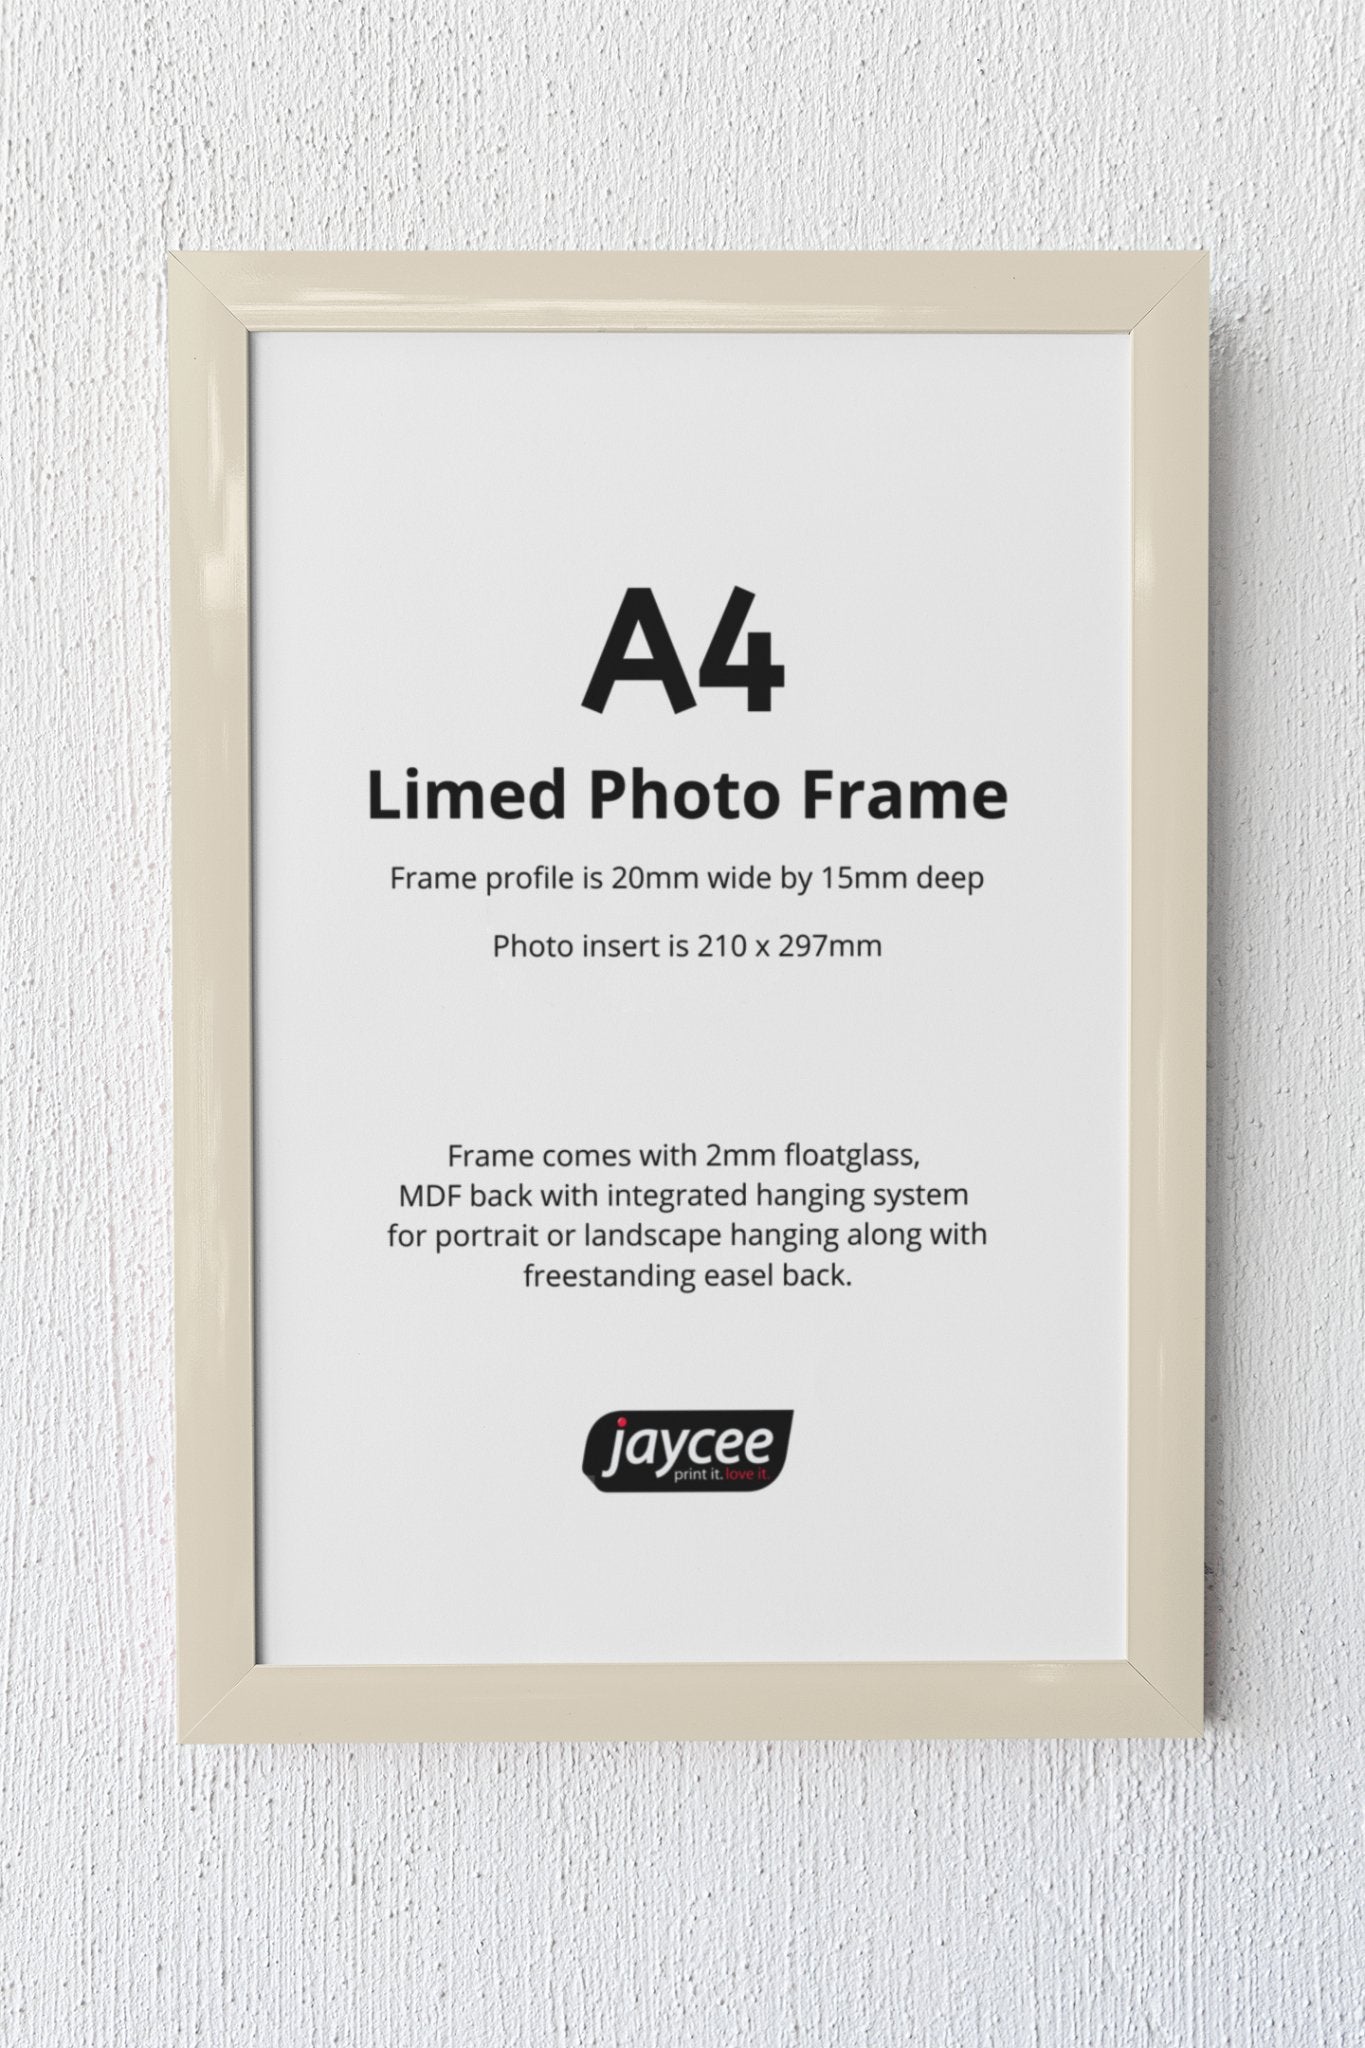 A4 Limed Photo Frame - Jaycee